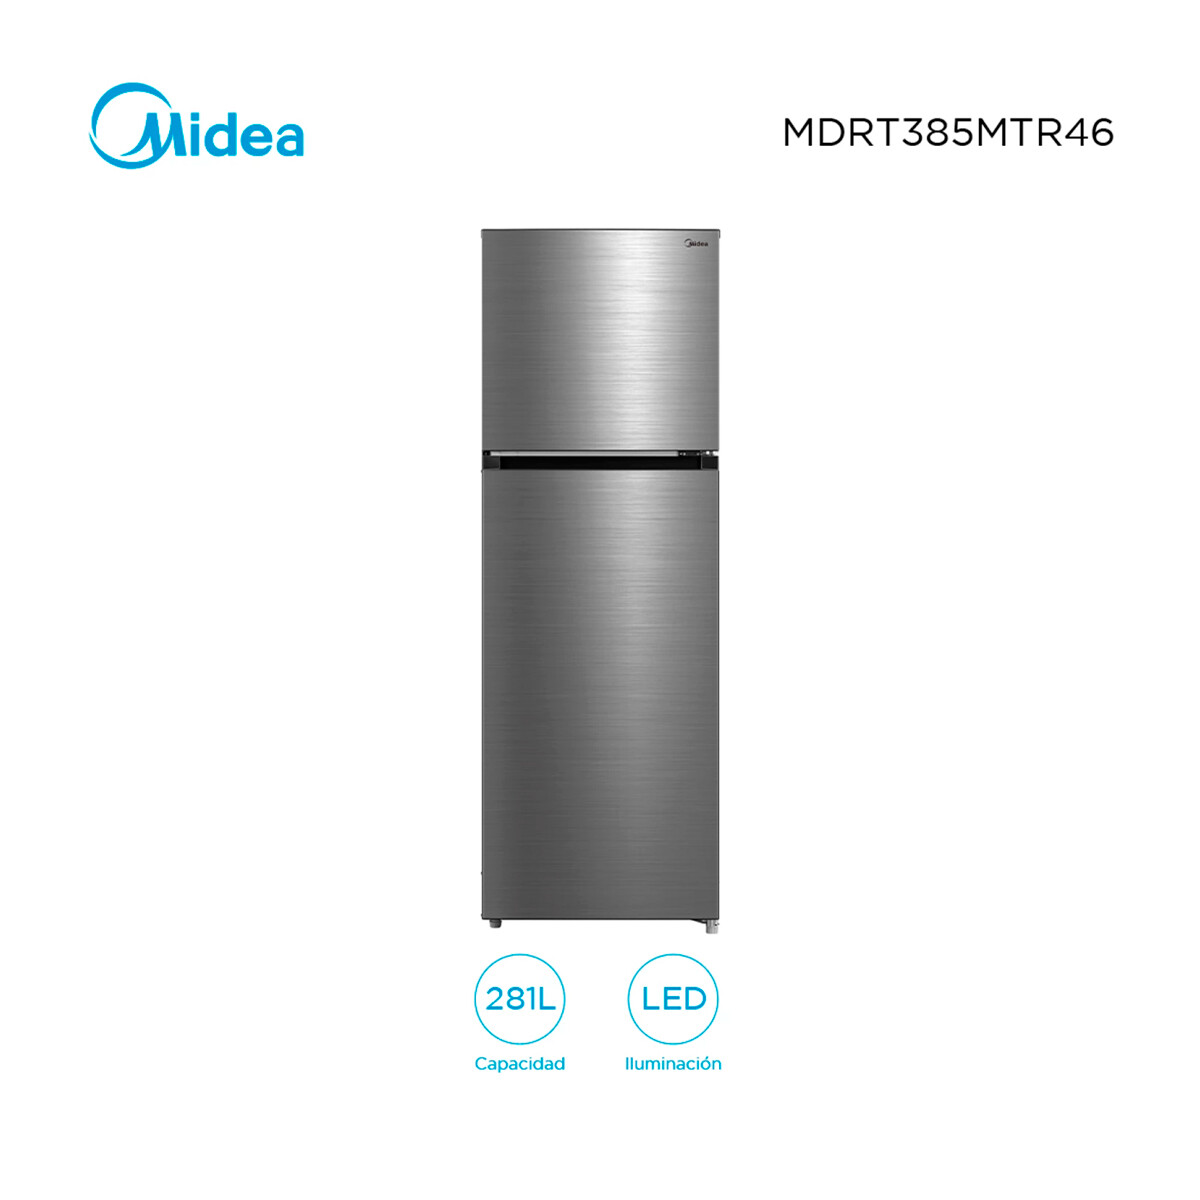 Refrigerador 274 Lts. Inox Midea M300sd Mdrt385mtr46 